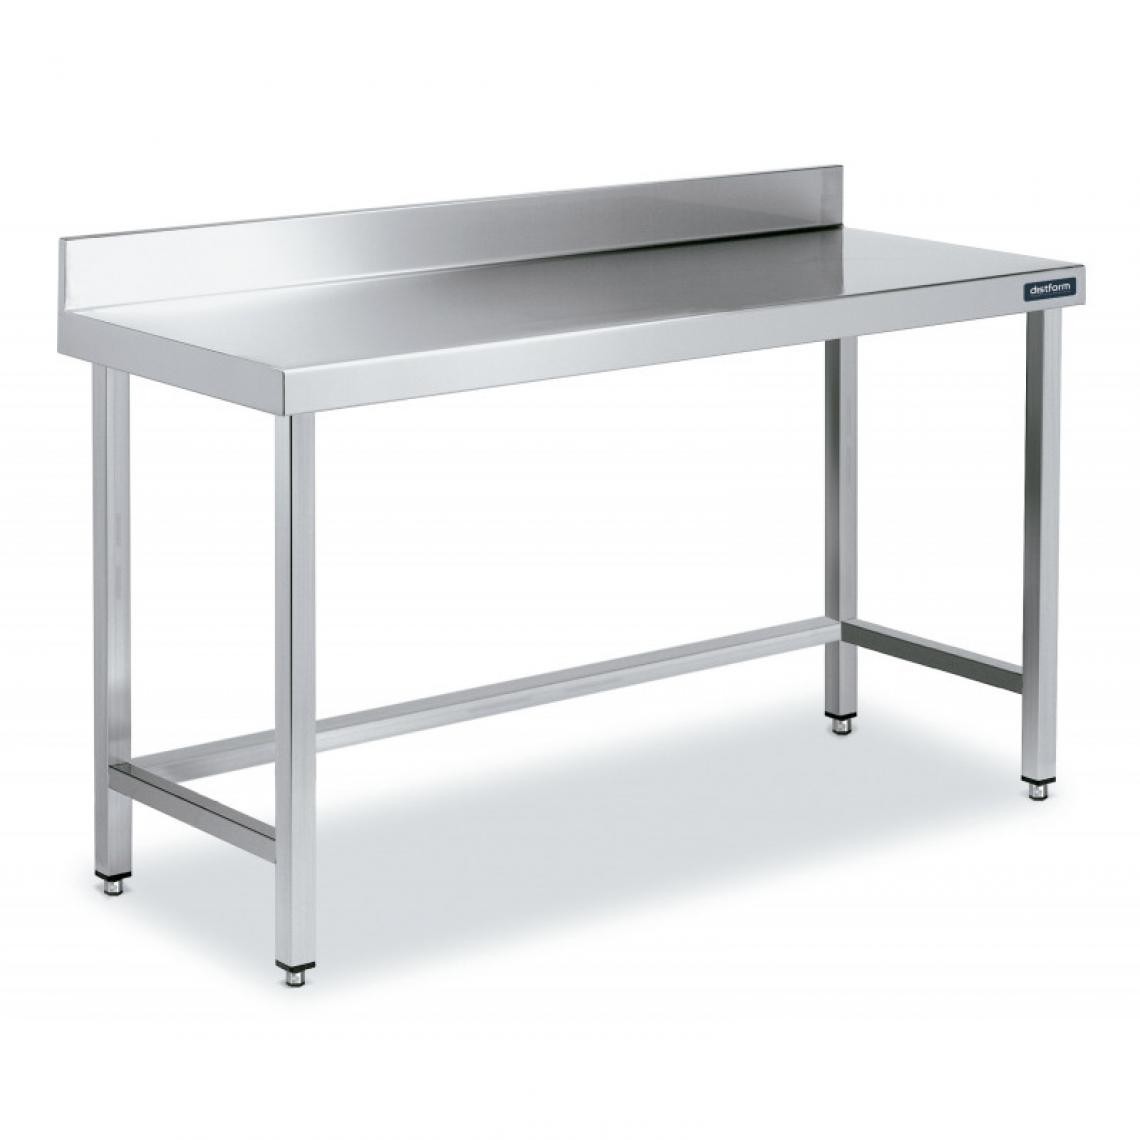 DISTFORM - Table Adossée en Inox avec Renforts Profondeur 700 mm - Distform - Acier inoxydable2800x700 - Tables à manger